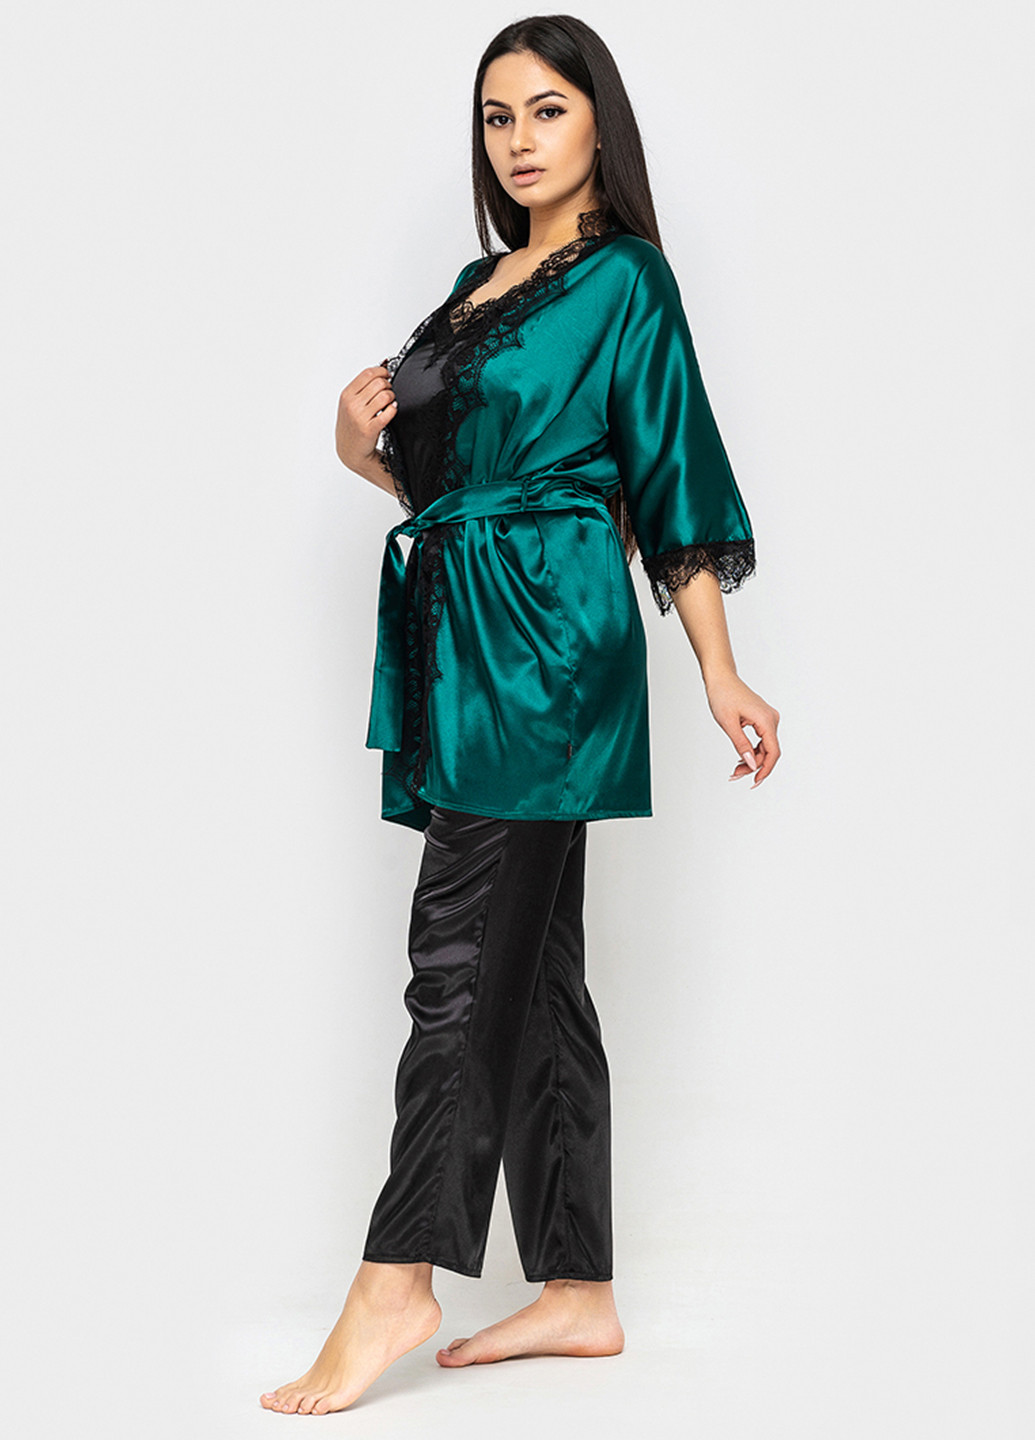 Зеленый демисезонный комплект (халат, топ, брюки) Ghazel